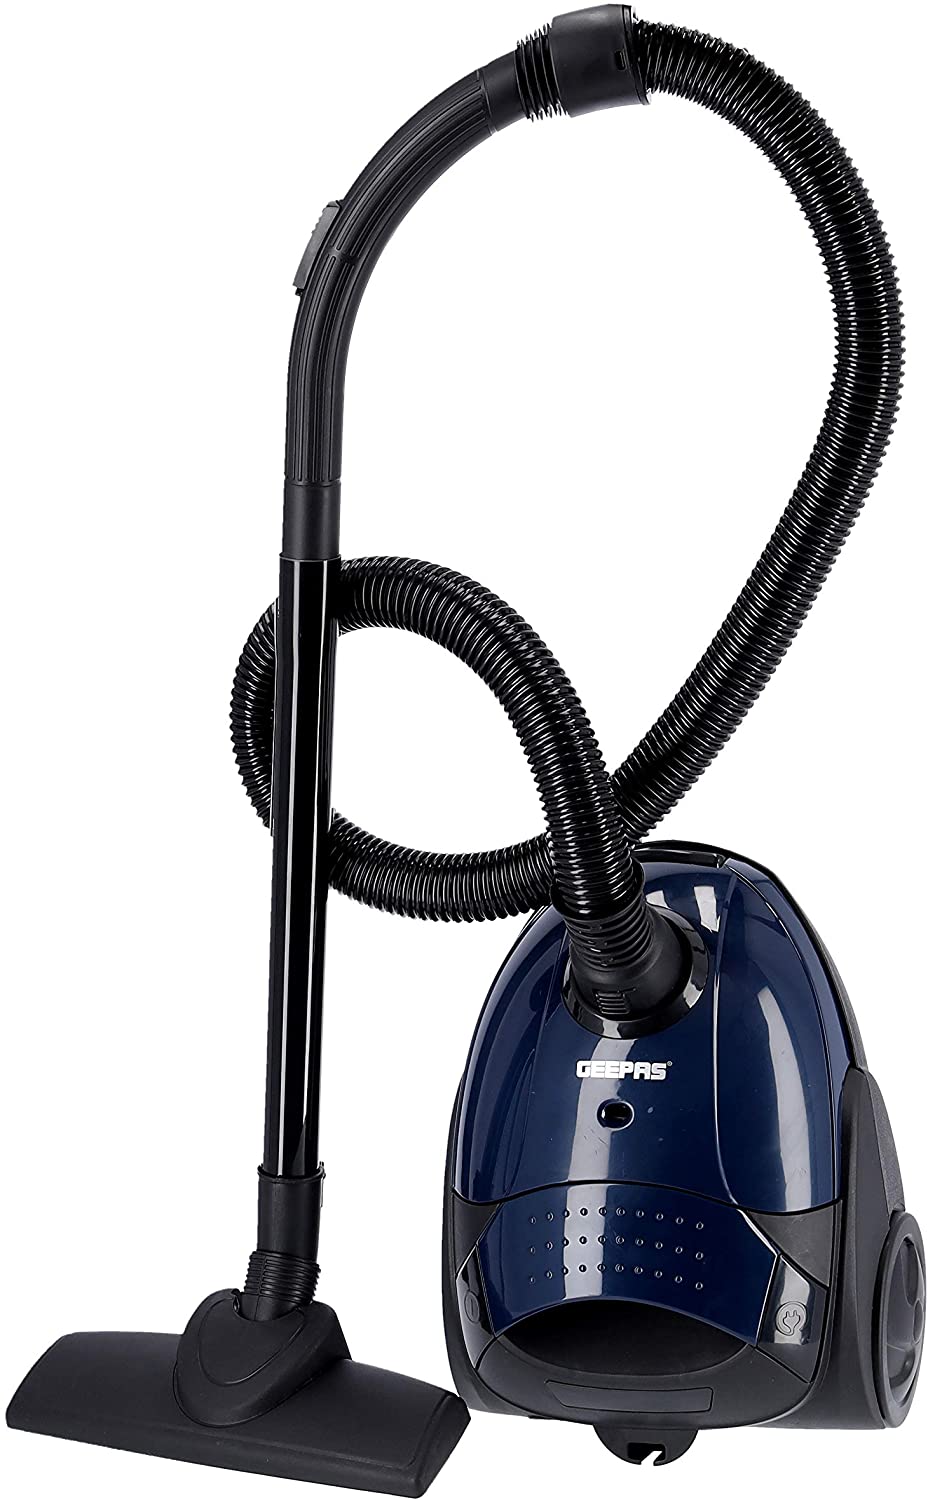 Geepas Vacuum Cleaner 1.5 Liter 2200 Watts Assorted Colors